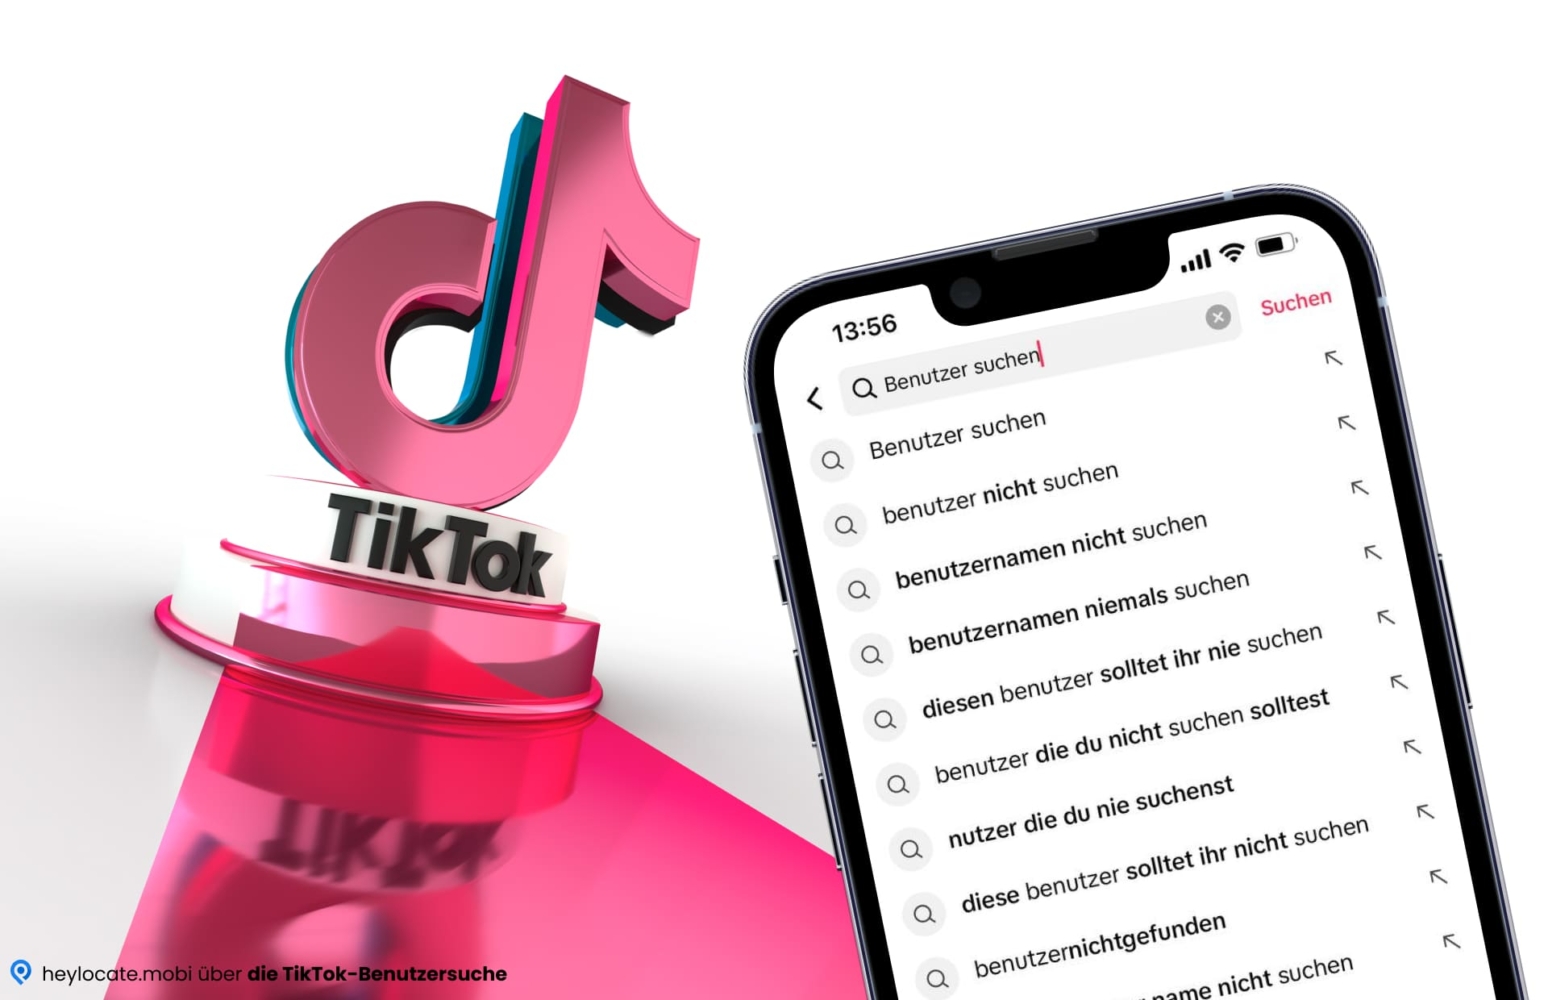 Dieses Bild zeigt das Konzept der Benutzersuche auf der TikTok-Plattform. Im Vordergrund ist ein Handybildschirm mit "User Search" in der Suchleiste und verschiedenen Such- und Vorschauoptionen zu sehen. Im Hintergrund ist das TikTok-Logo in leuchtenden rosa und blauen Farben zu sehen. Insgesamt wirkt das Bild modern und digital orientiert.